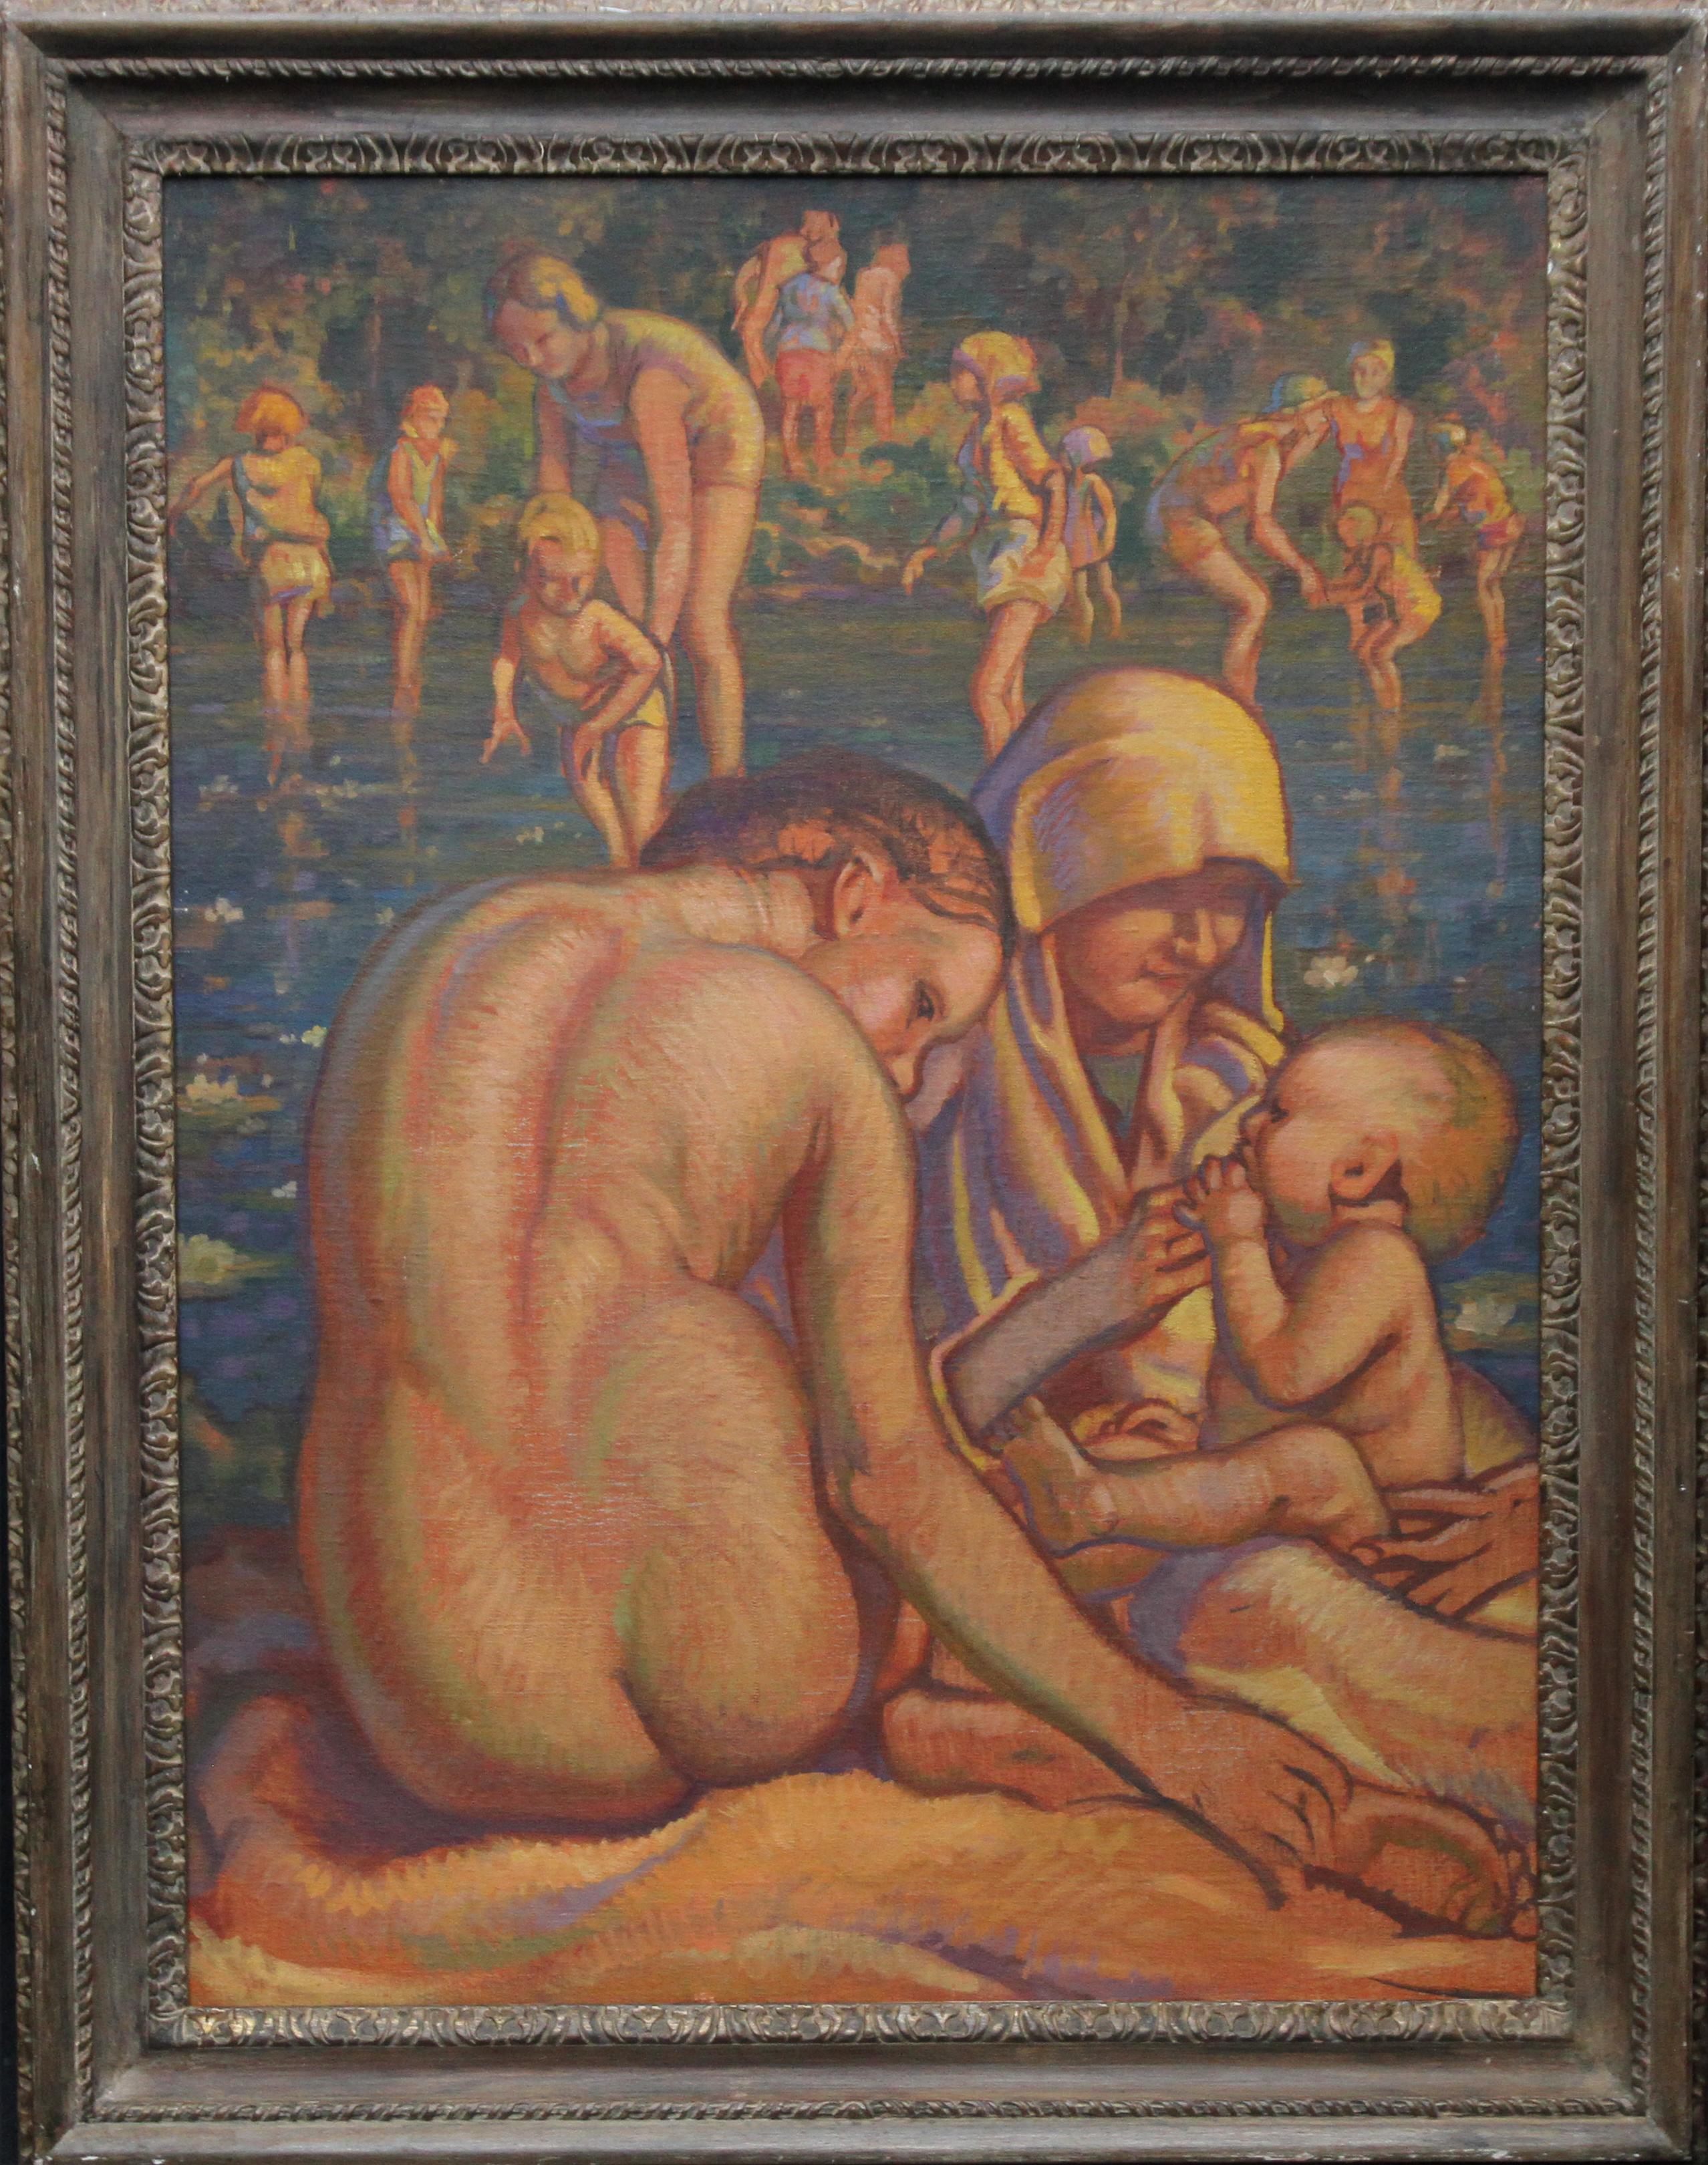 Madre e hijo bañándose - Óleo desnudo Art Decó de los años 30 de la escuela británica Slade